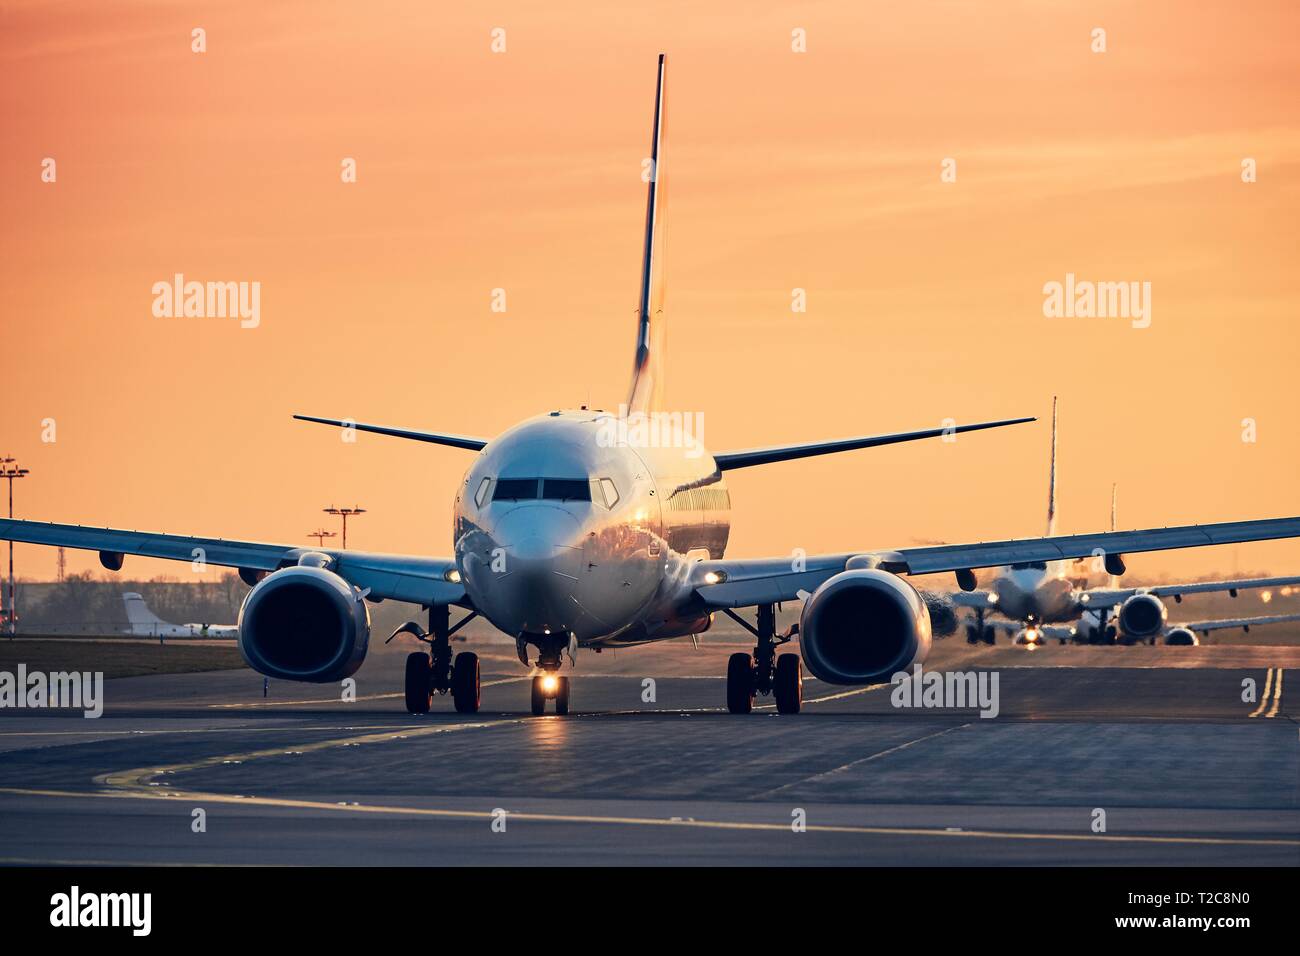 Flugzeuge in der Zeile Rollen zur startbahn zum Abheben. Verkehr an der geschäftigen Flughafen bei Sonnenuntergang. Stockfoto